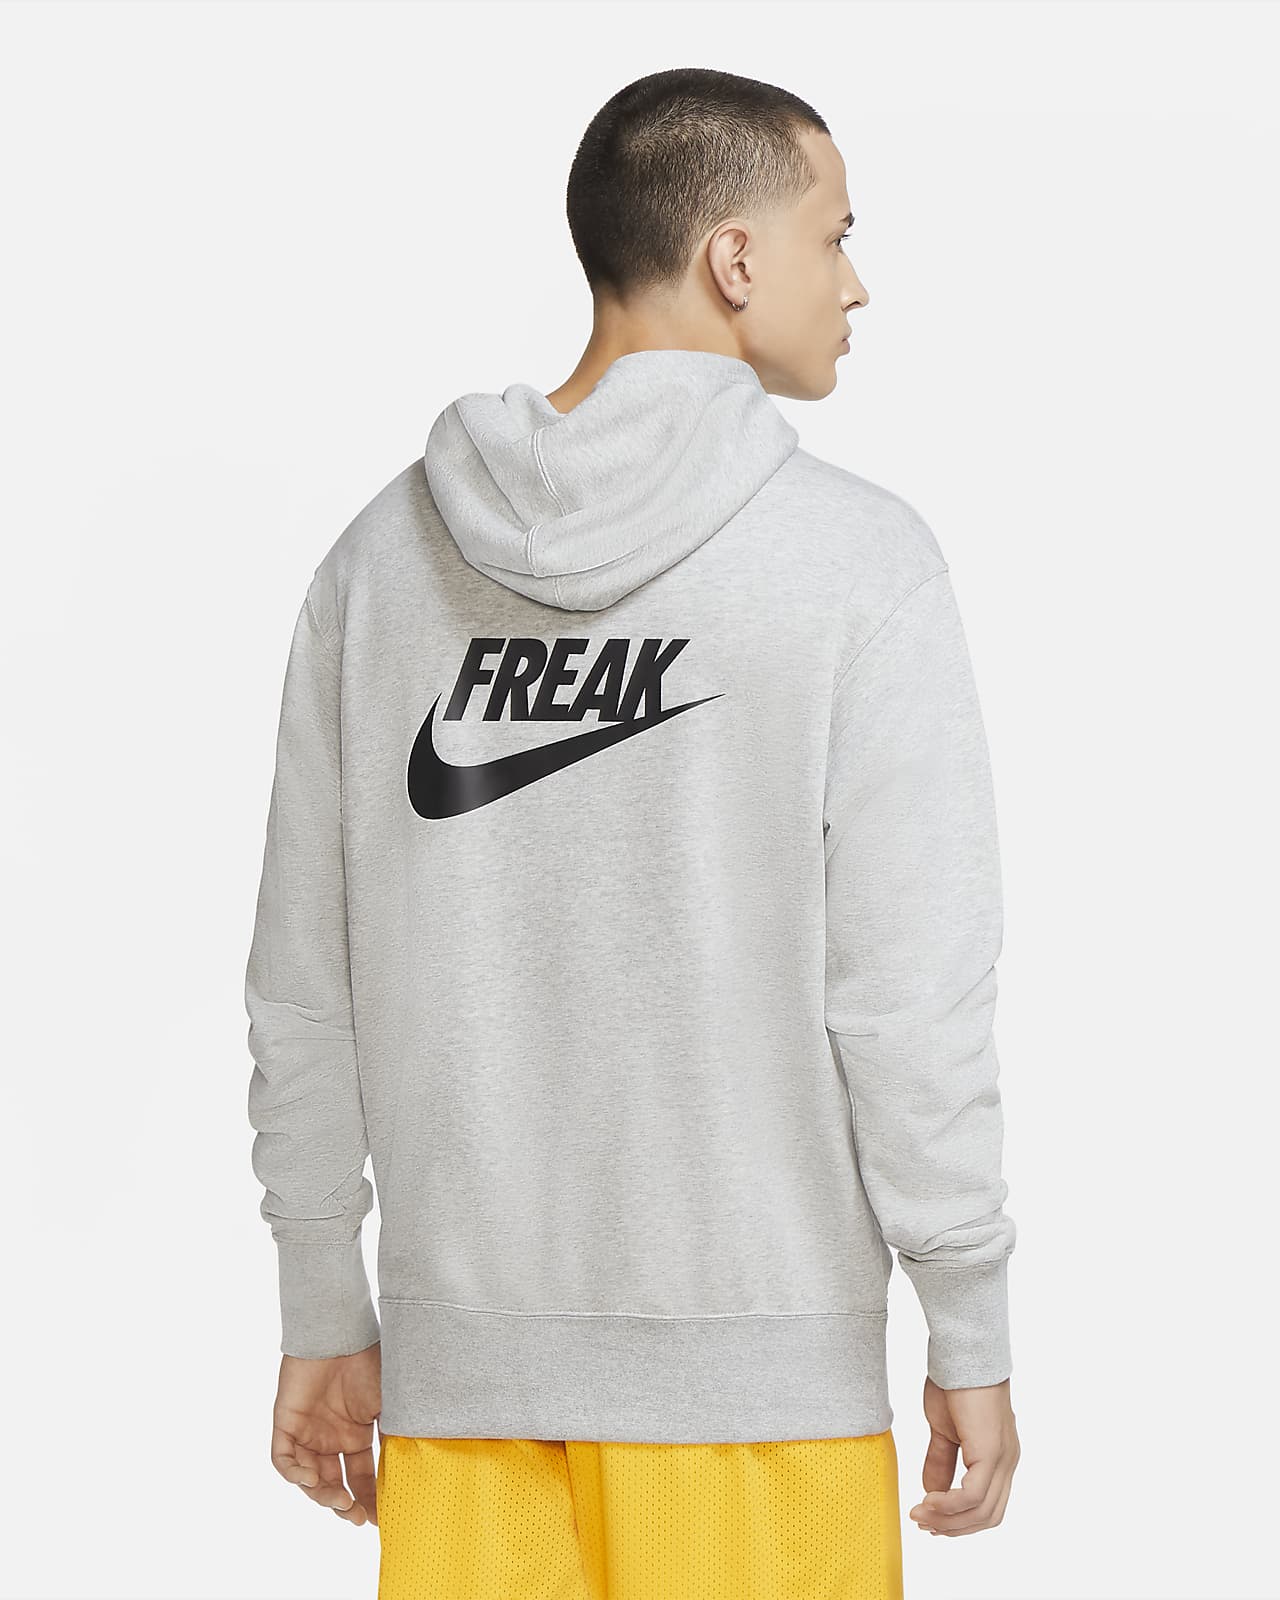 freak hoodie nike